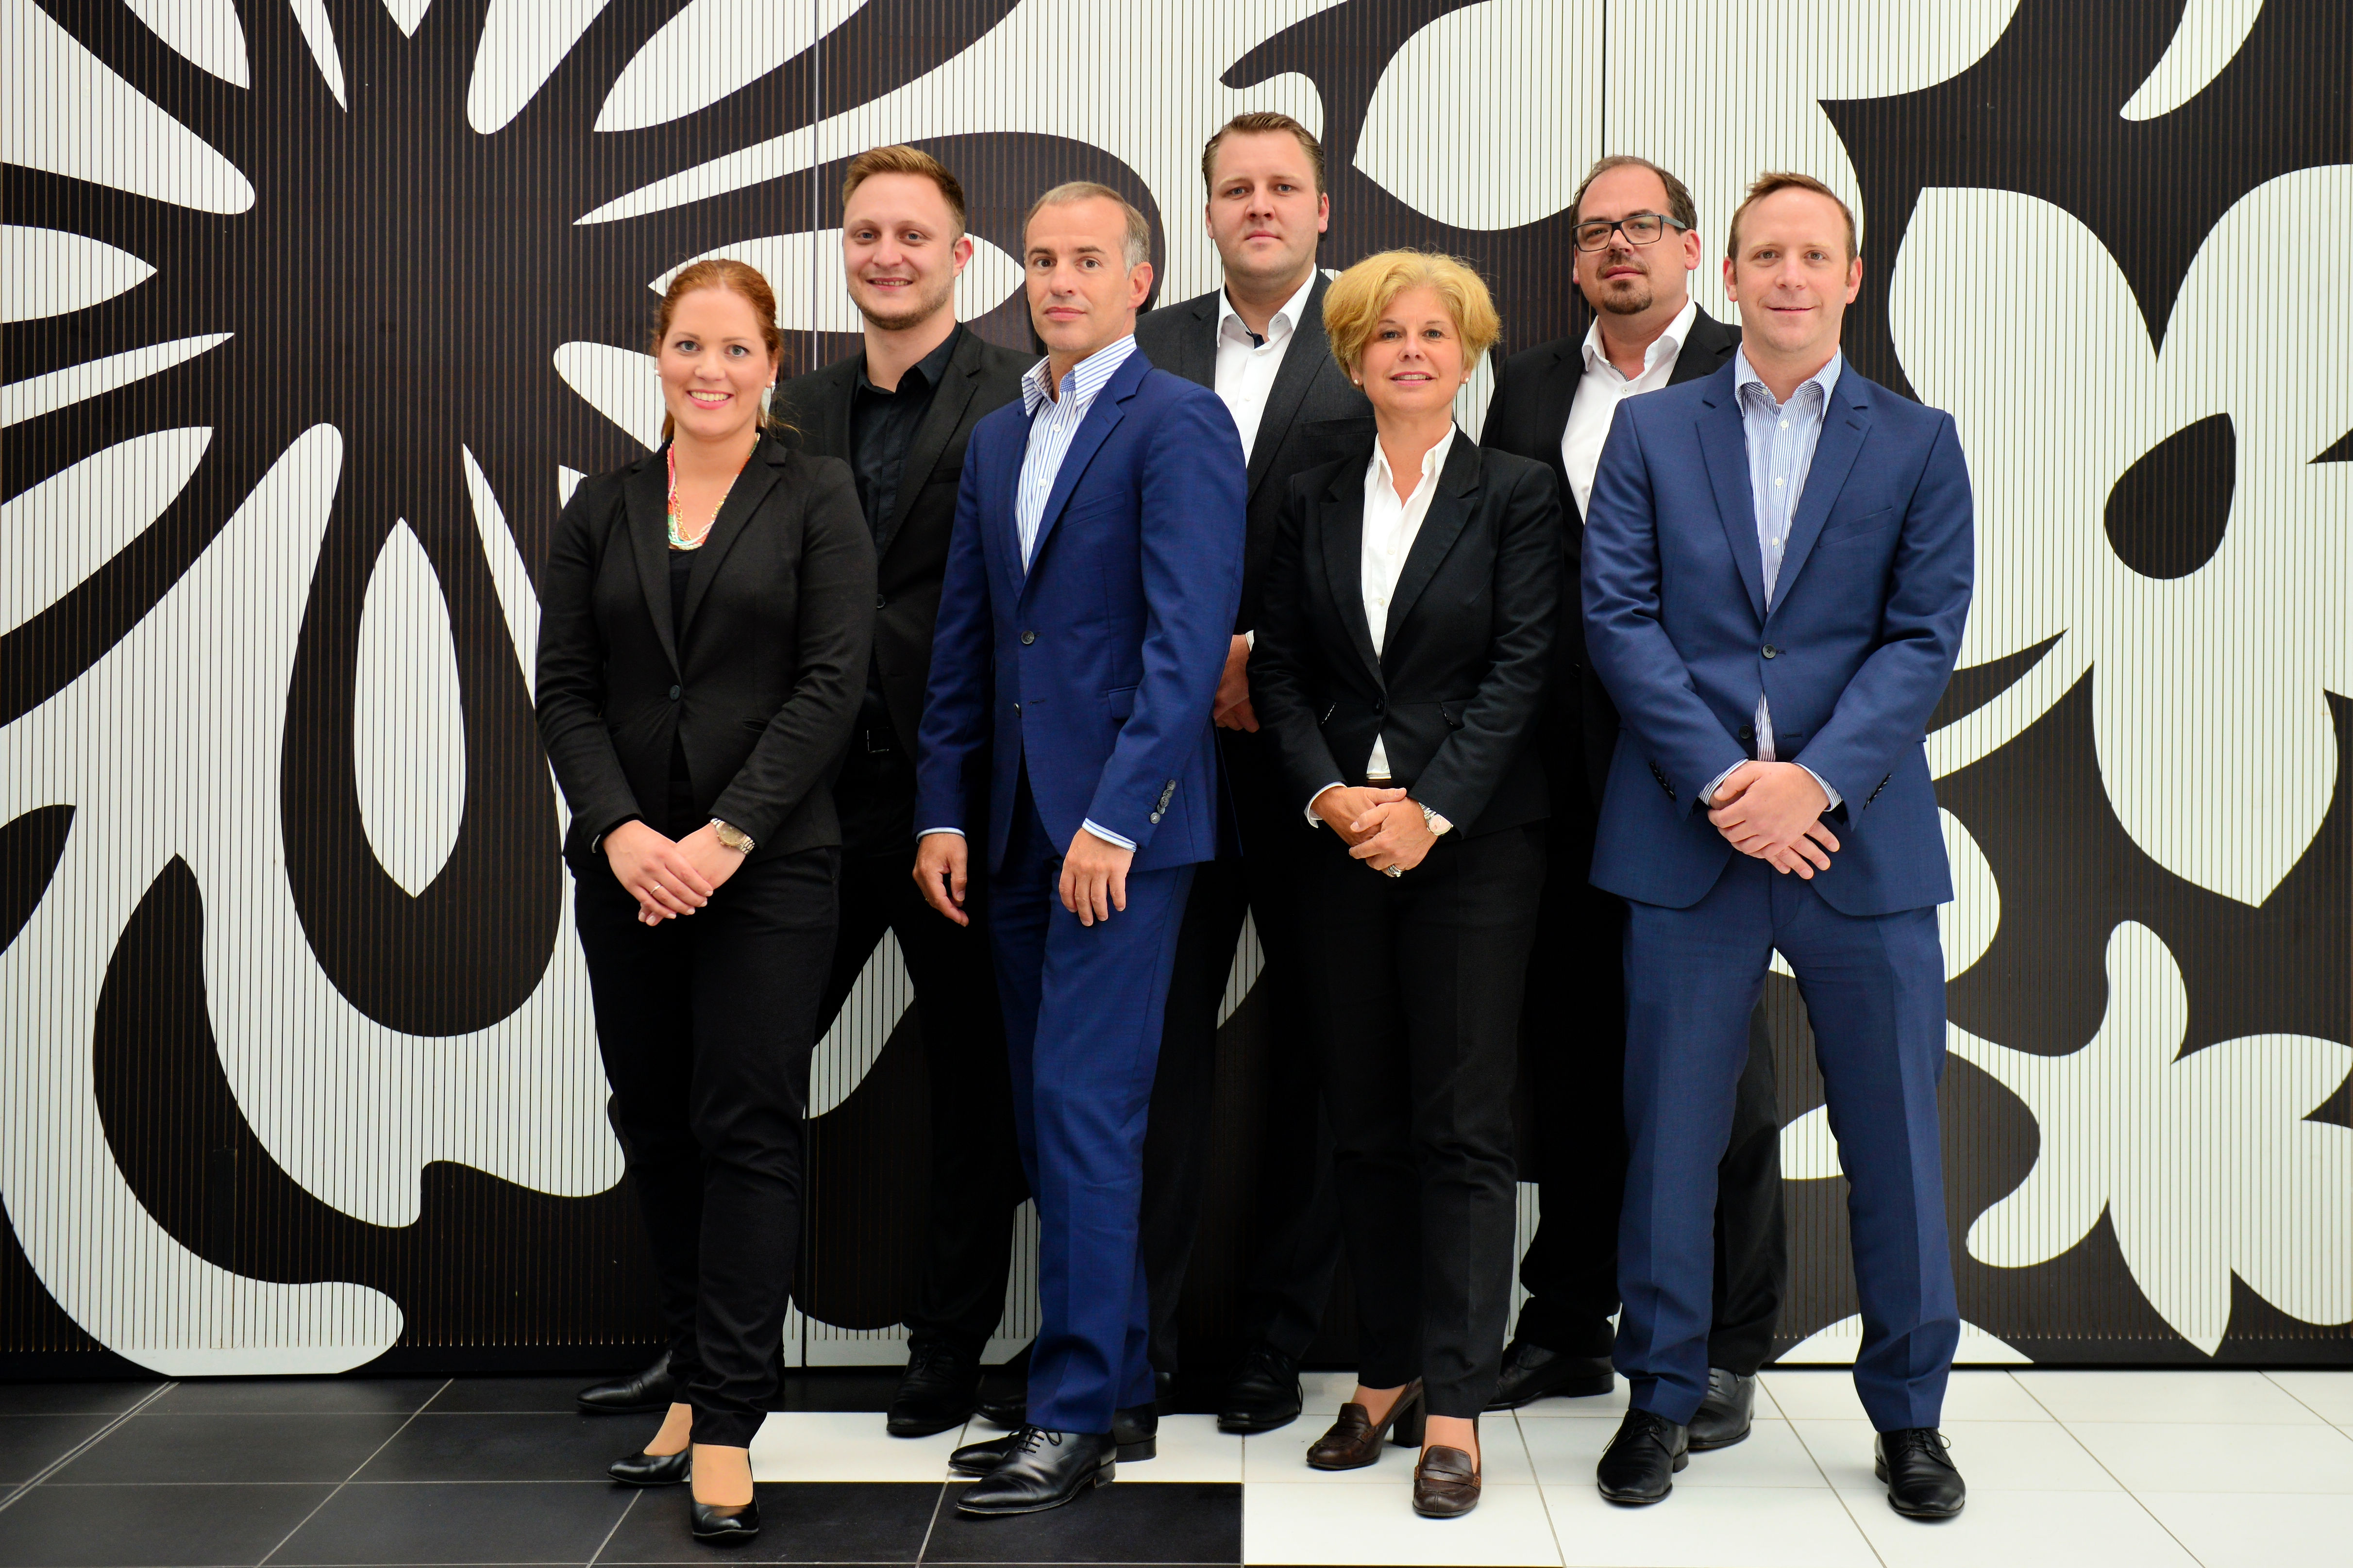 Kameha Grand Bonn: Verstärkung für das erfolgreiche Team – Neue Kompetenz im Hinblick auf Eröffnung des WCCB-Hotels Bonn